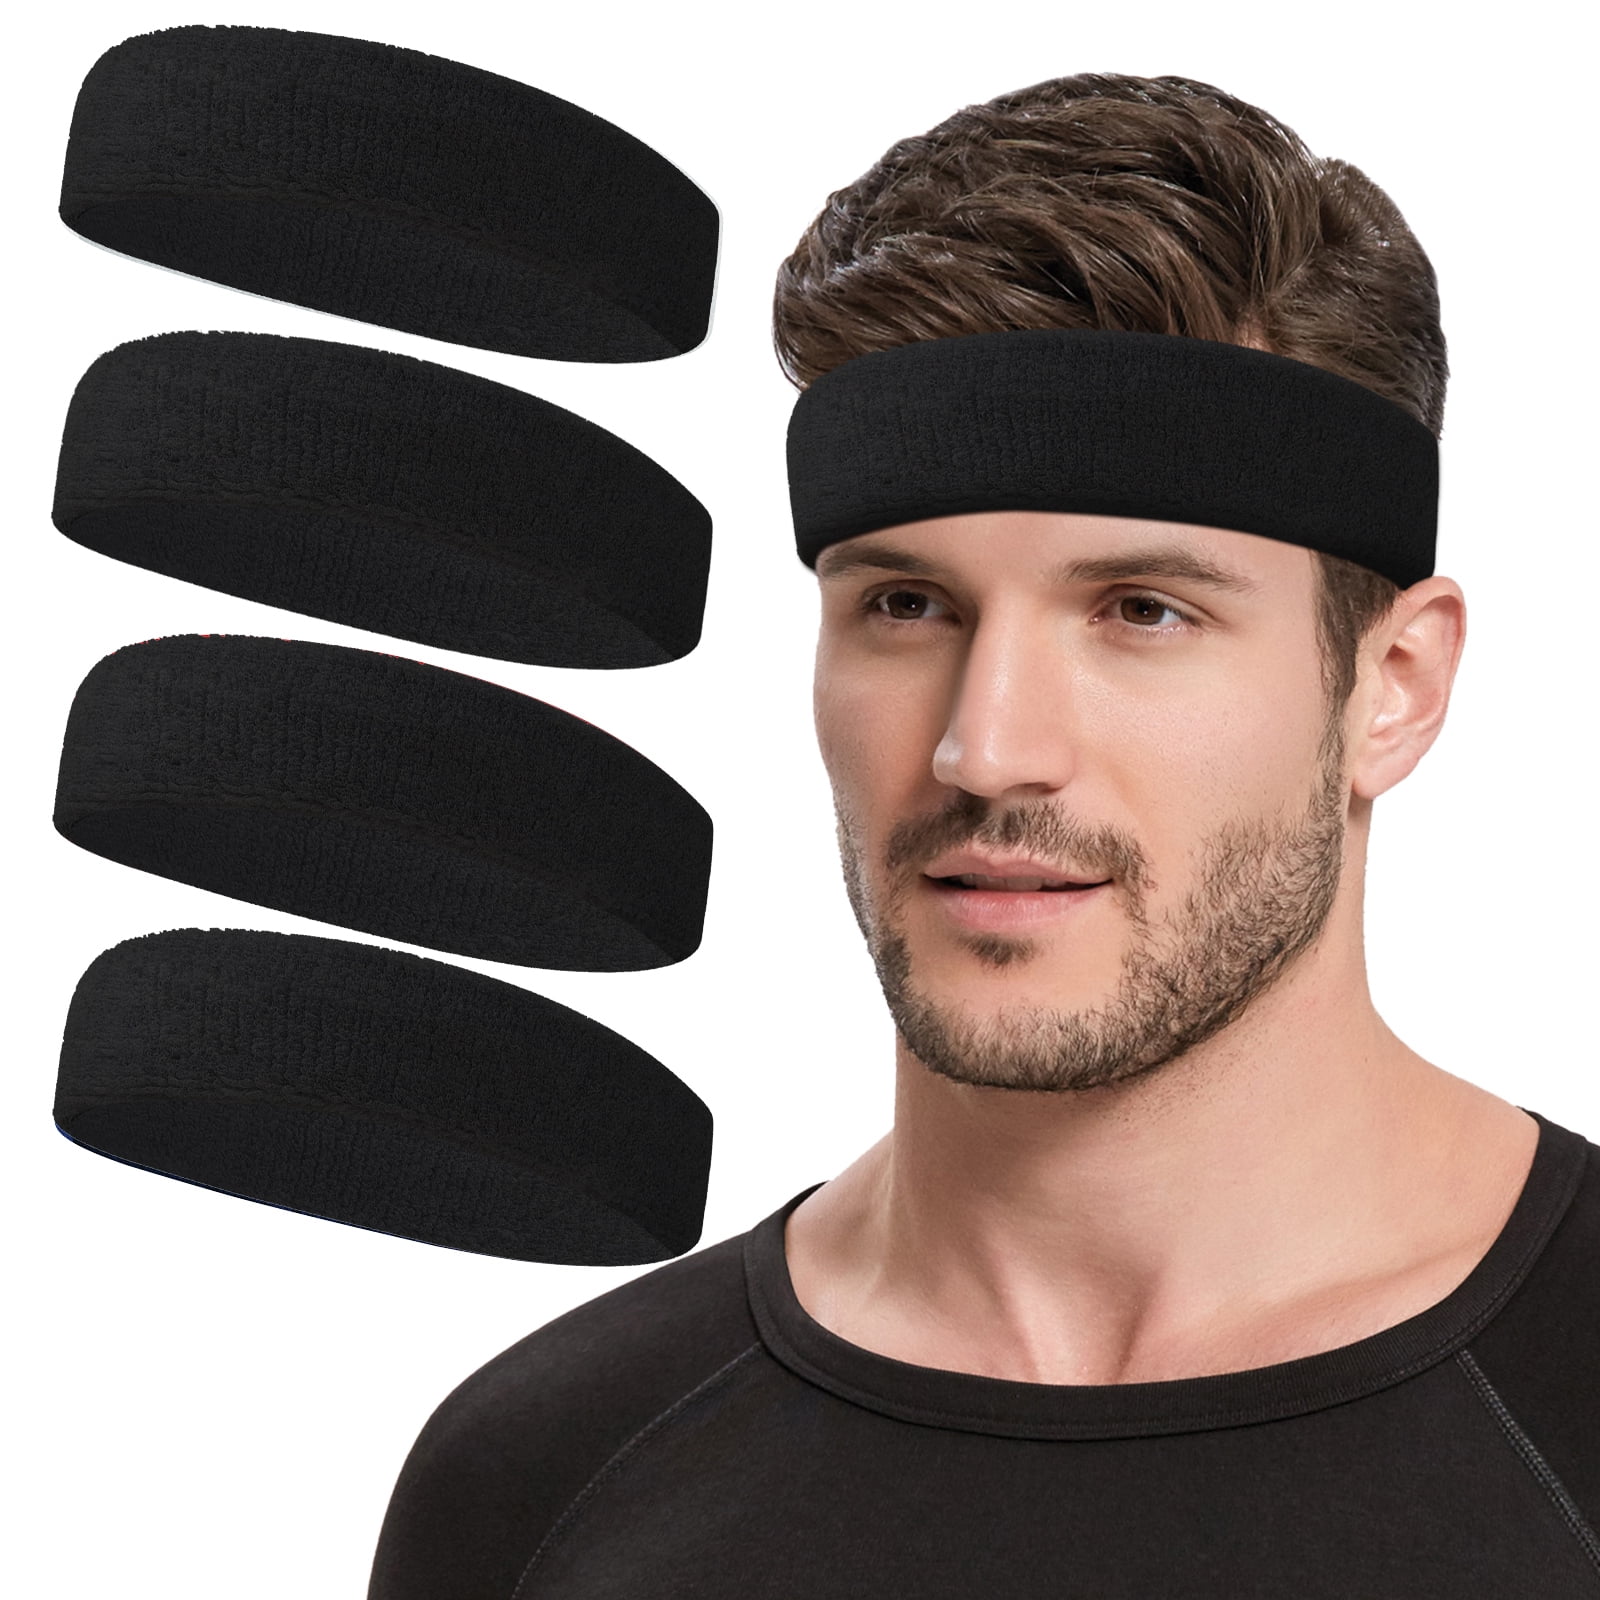 NONSTOP Sweat Bands Headbands for Men Women, Cooling Headband Pack